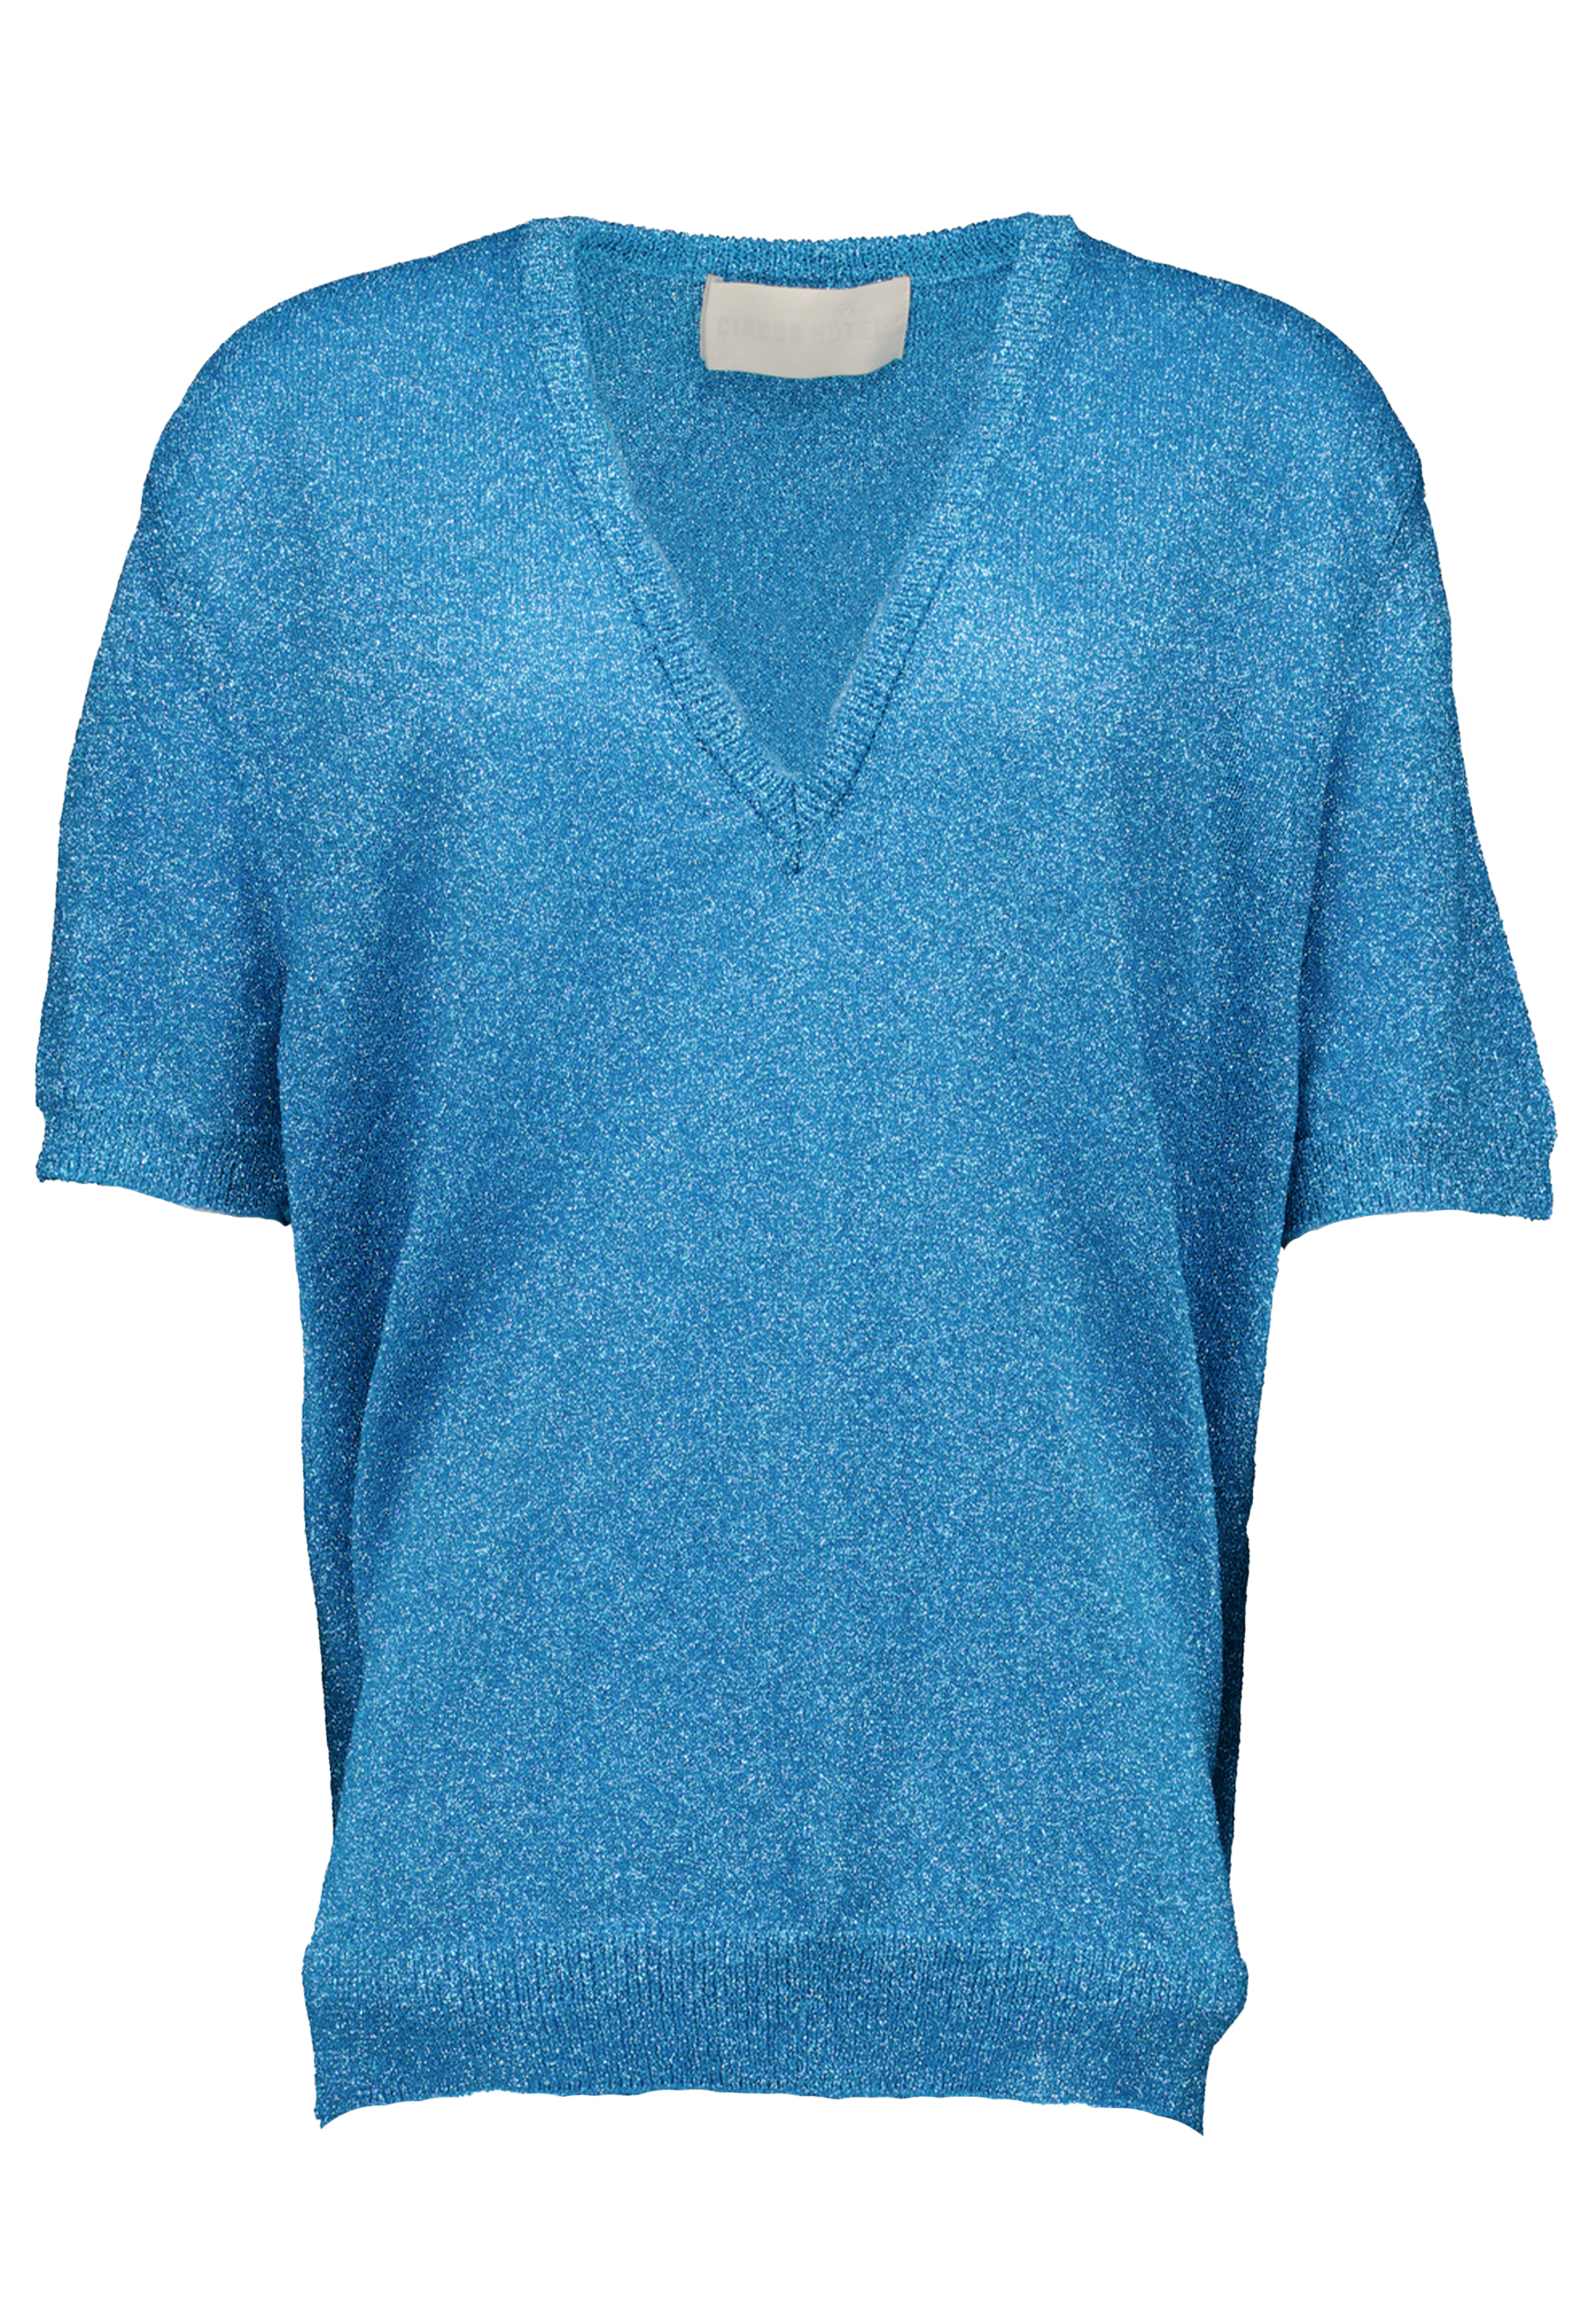 Shirt Blauw t-shirts blauw